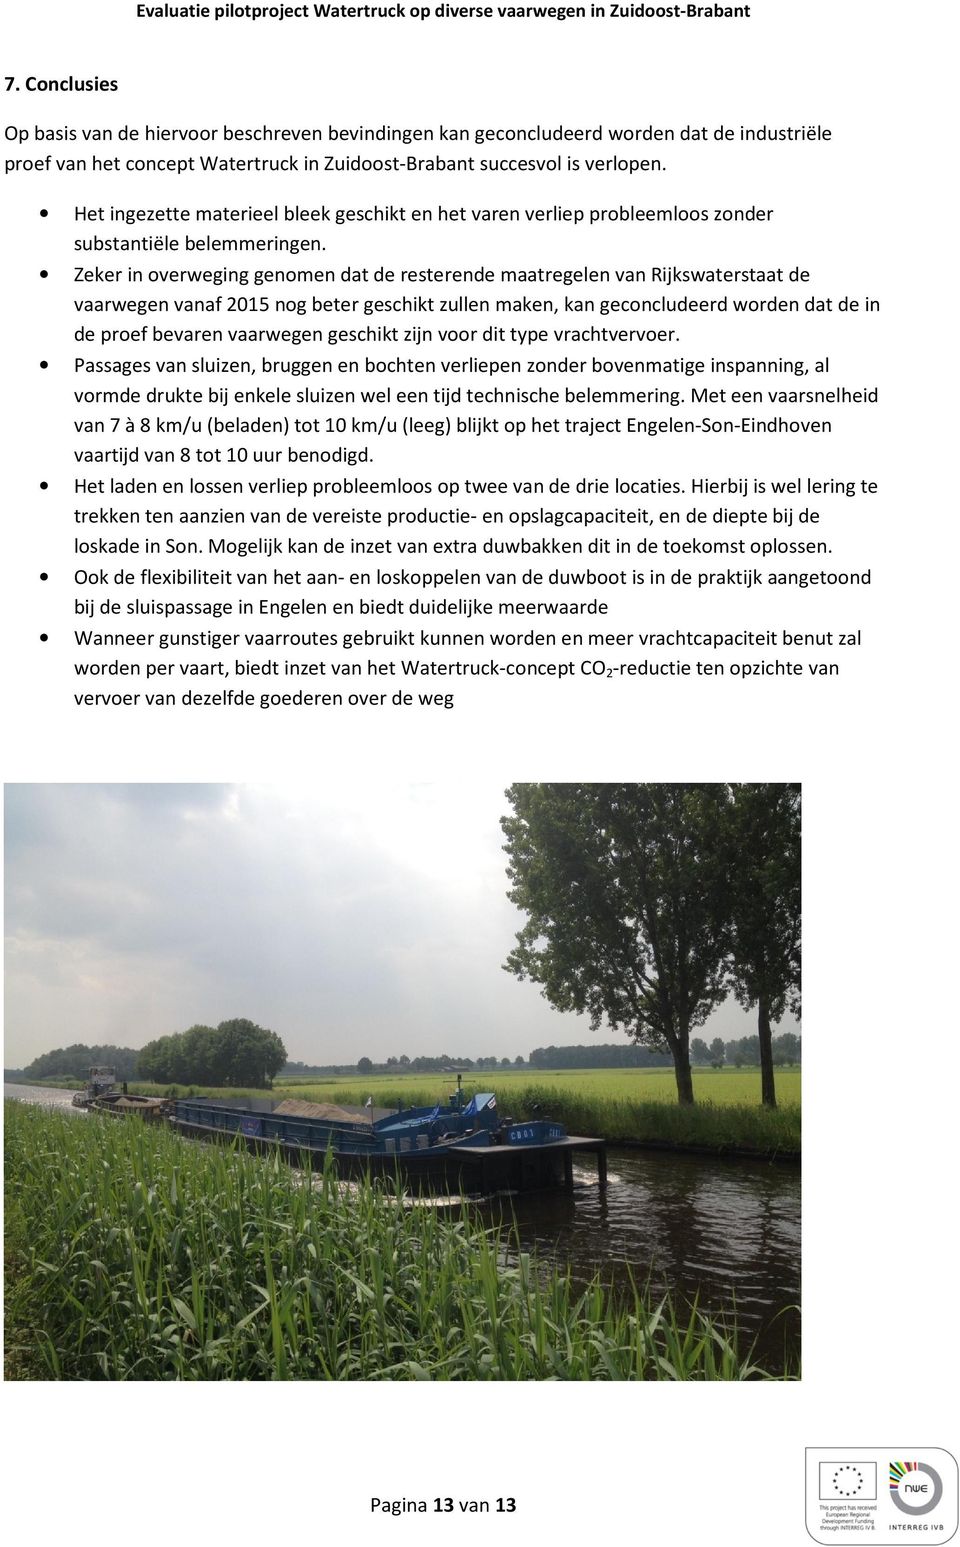 Zeker in overweging genomen dat de resterende maatregelen van Rijkswaterstaat de vaarwegen vanaf 2015 nog beter geschikt zullen maken, kan geconcludeerd worden dat de in de proef bevaren vaarwegen